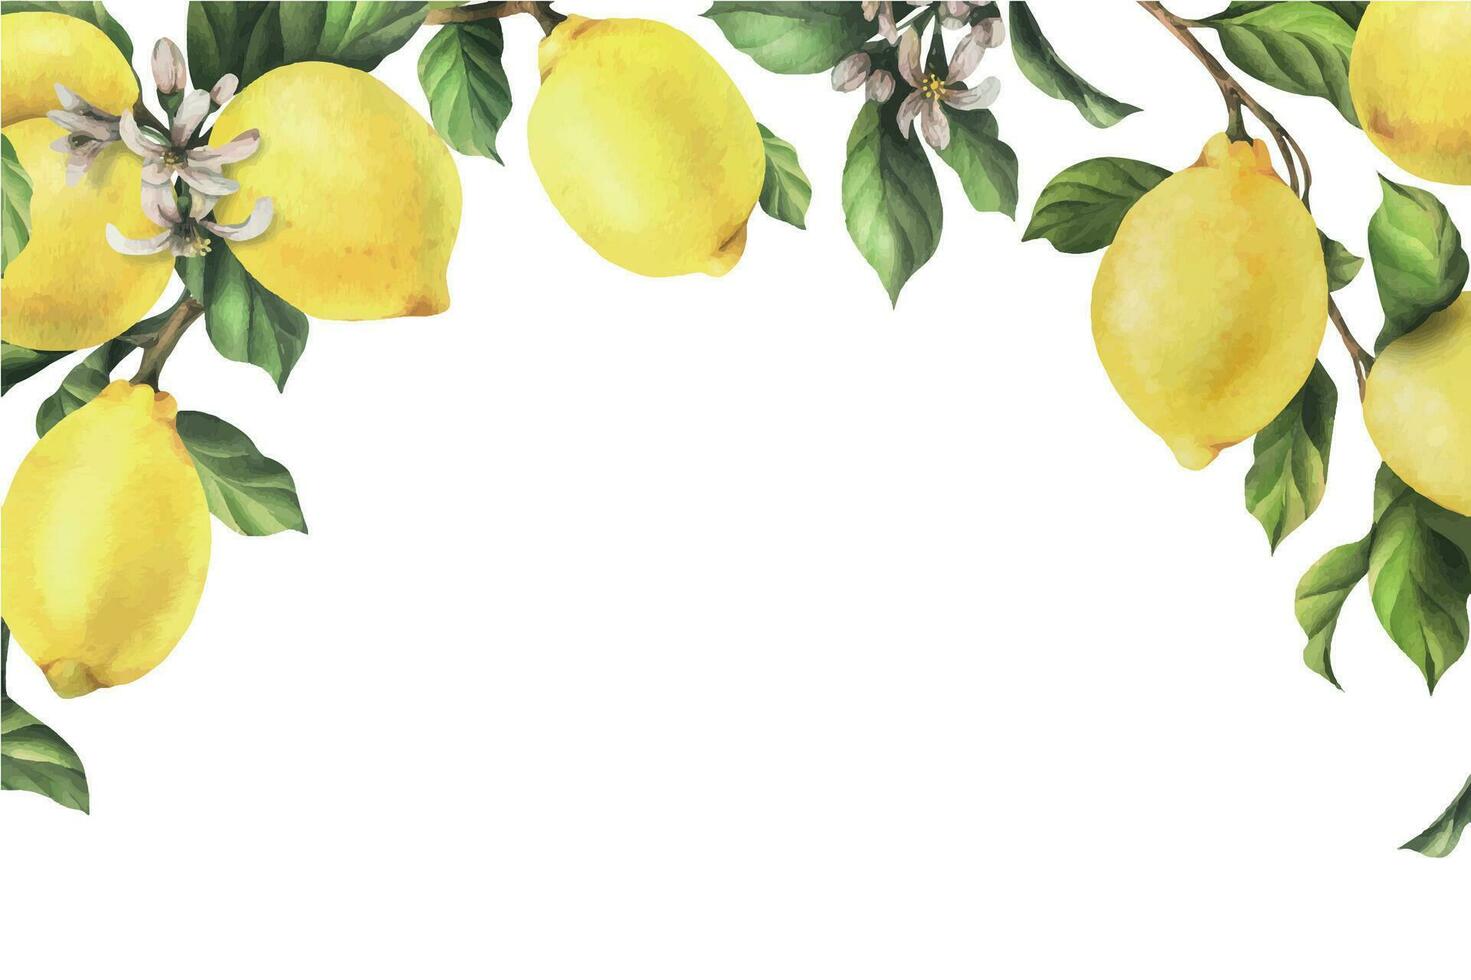 citroner är gul, saftig, mogen med grön löv, blomma knoppar på de grenar, hela och skivor. vattenfärg, hand dragen botanisk illustration. ram, mall på en vit bakgrund vektor